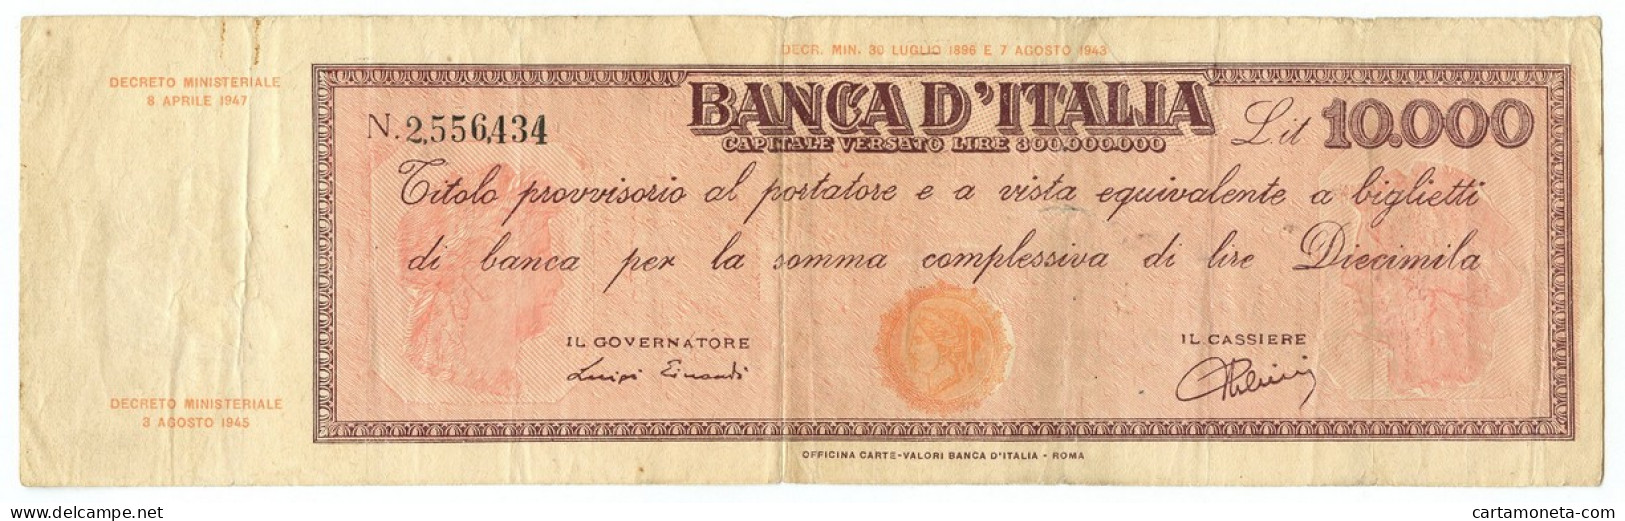 10000 LIRE FALSO D'EPOCA TITOLO PROVVISORIO TESTINA REPUBBLICA IT 08/04/1947 QBB - [ 8] Fictifs & Specimens